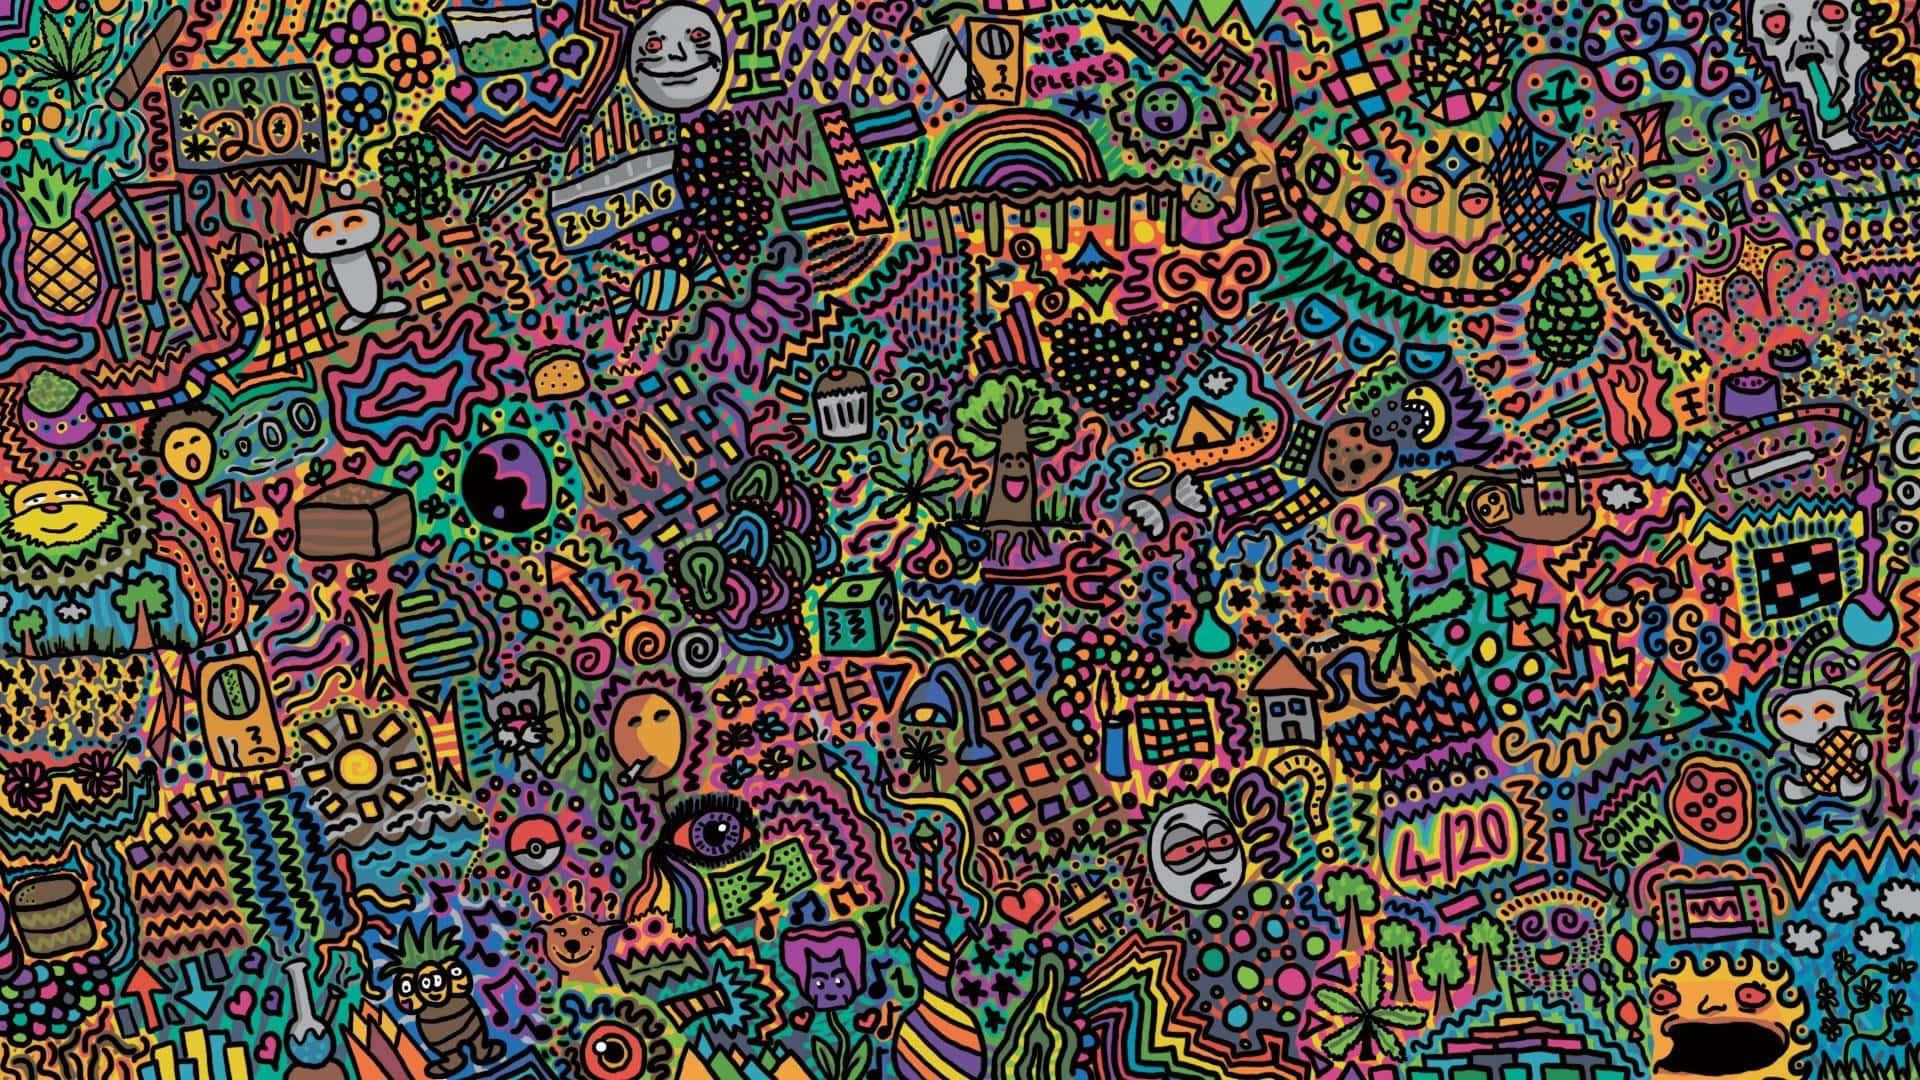 Einewilde, Psychedelische Und Farbenfrohe Reise Wallpaper